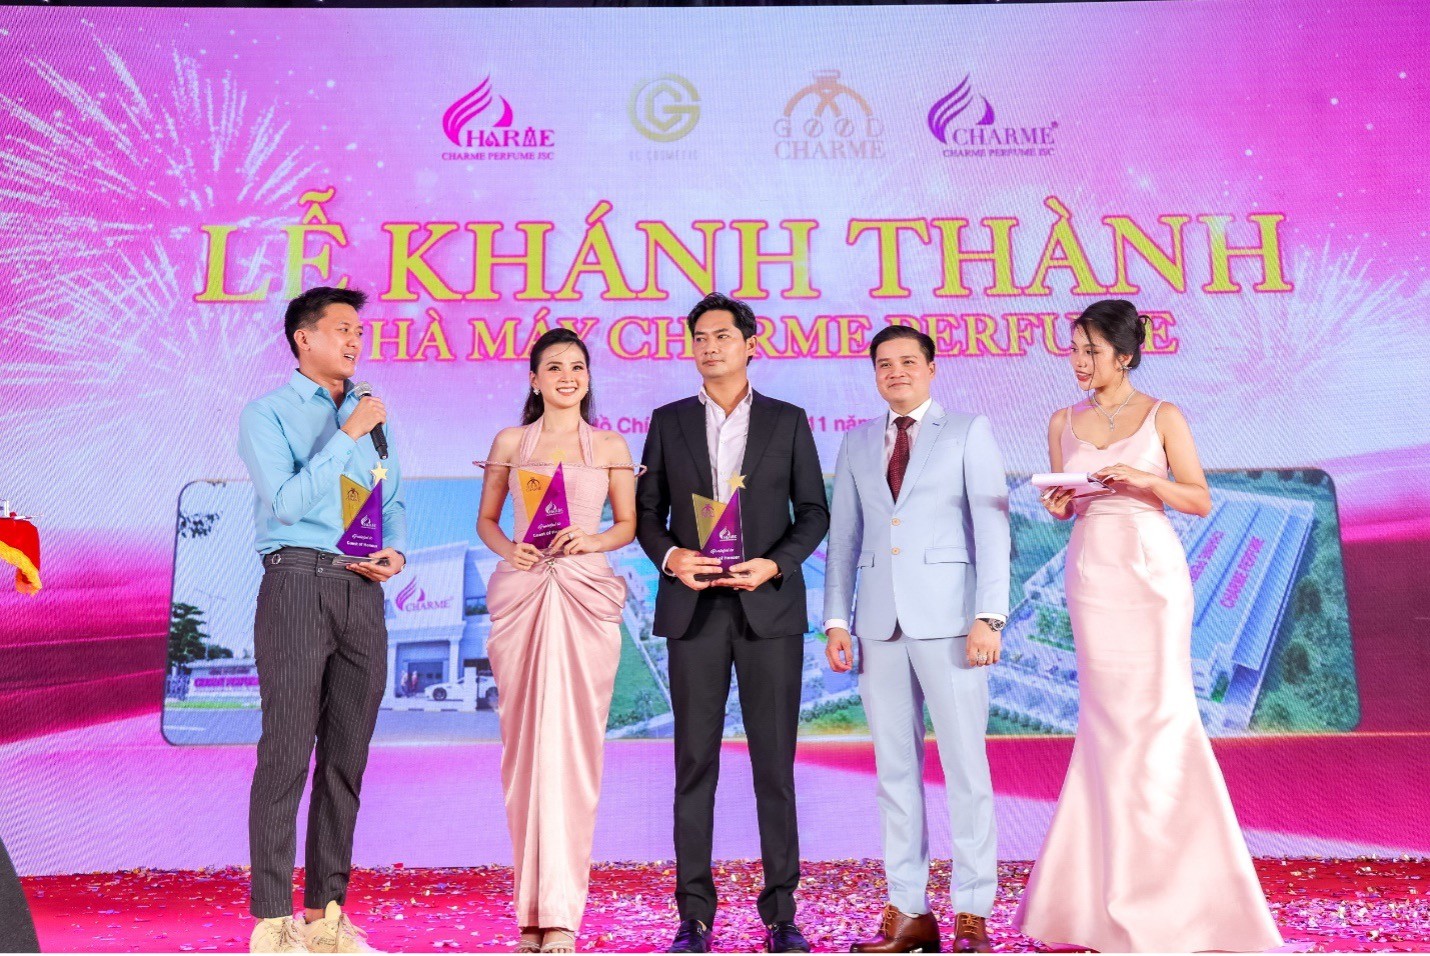 Diễn viên Quách Ngọc Tuyên, Minh Luân cùng ca sĩ Thiên Hương nhận cúp lưu niệm từ Charme Perfume